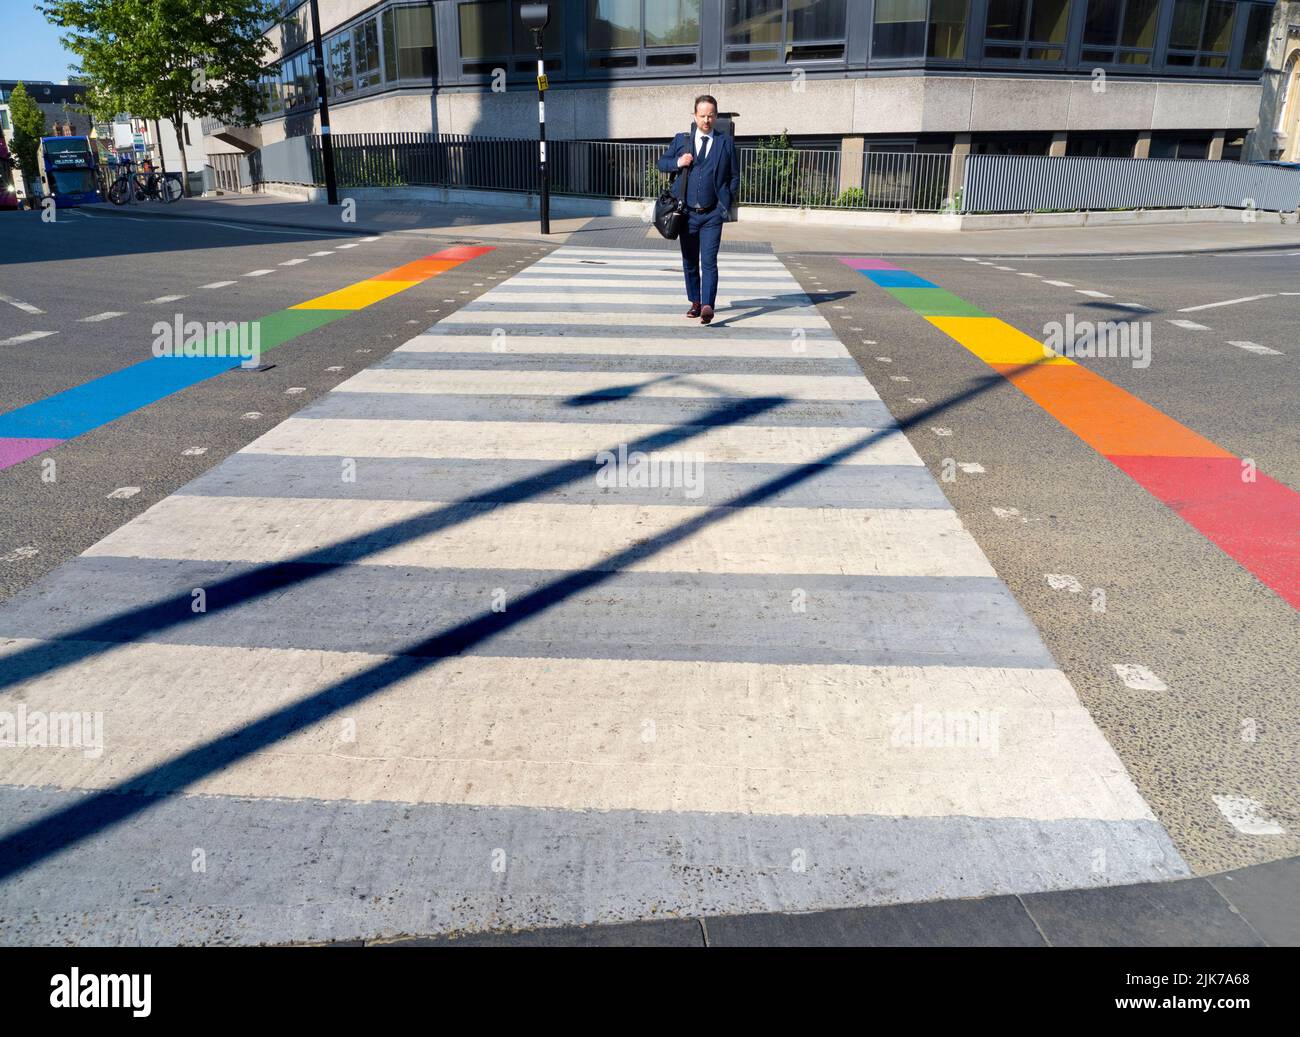 Im Rahmen der laufenden Veranstaltungen des Oxford Pride 2022 erhalten verschiedene Orte in der Stadt Regenbogenüberarbeitungen - wie diese Fußgängerüberfahrt am ju Stockfoto